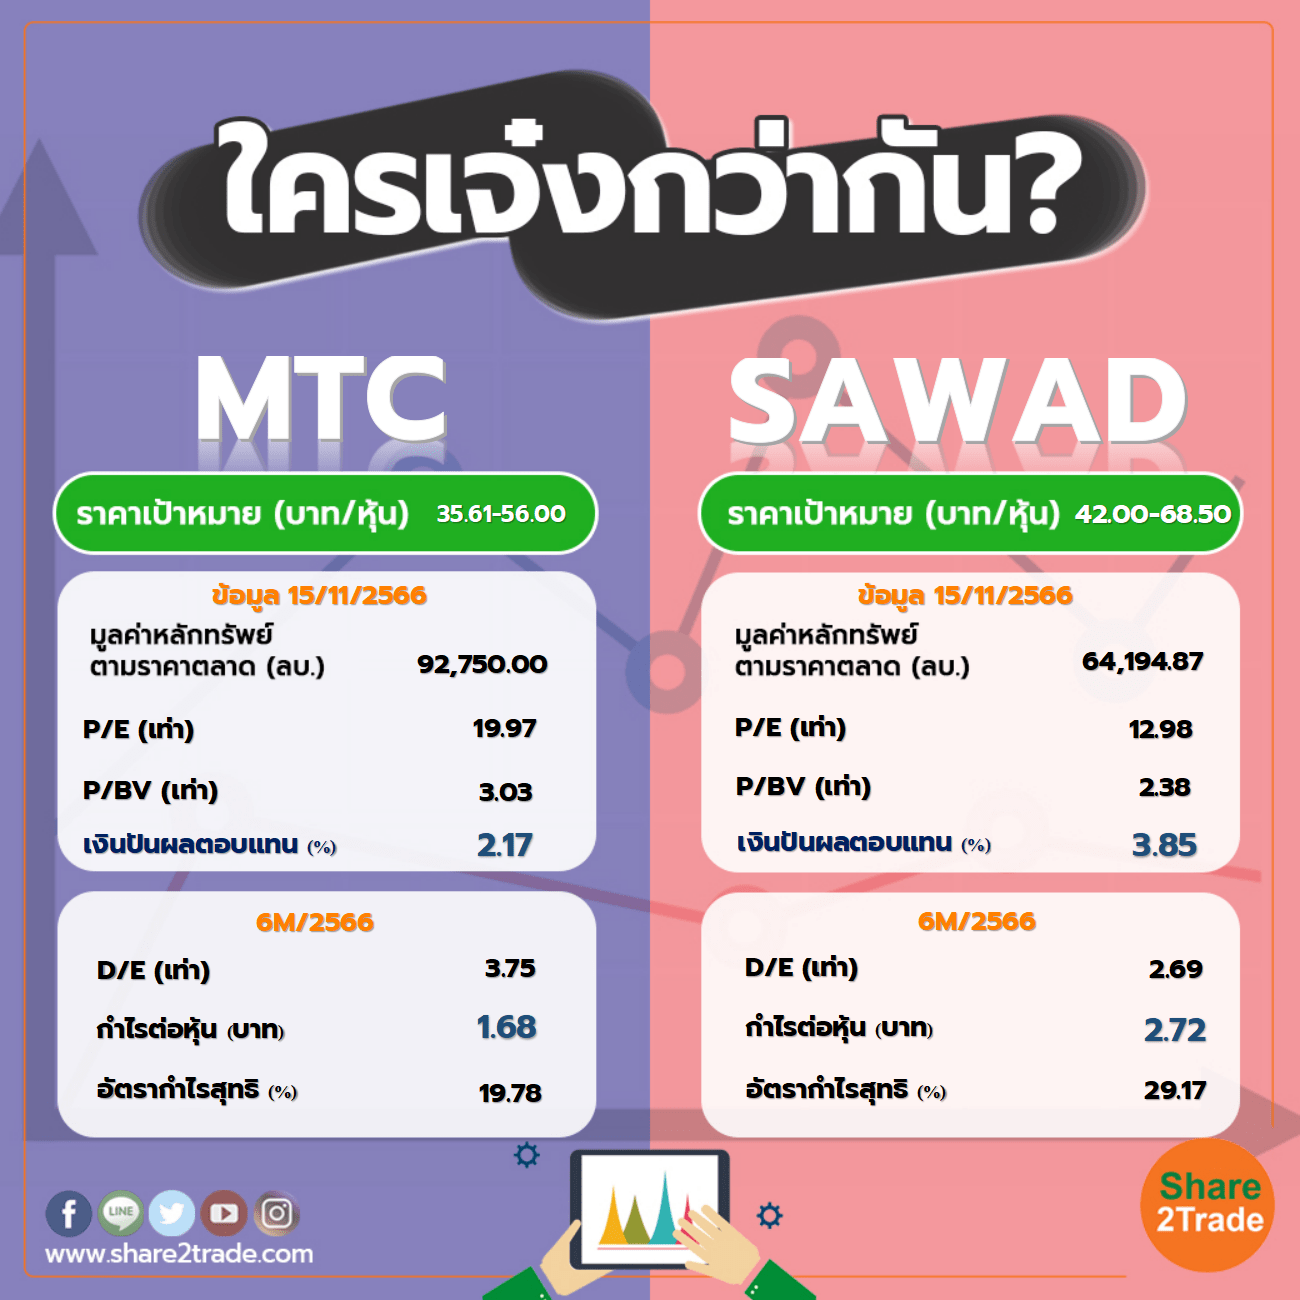 ใครเจ๋งกว่ากัน "MTC" VS "SAWAD"